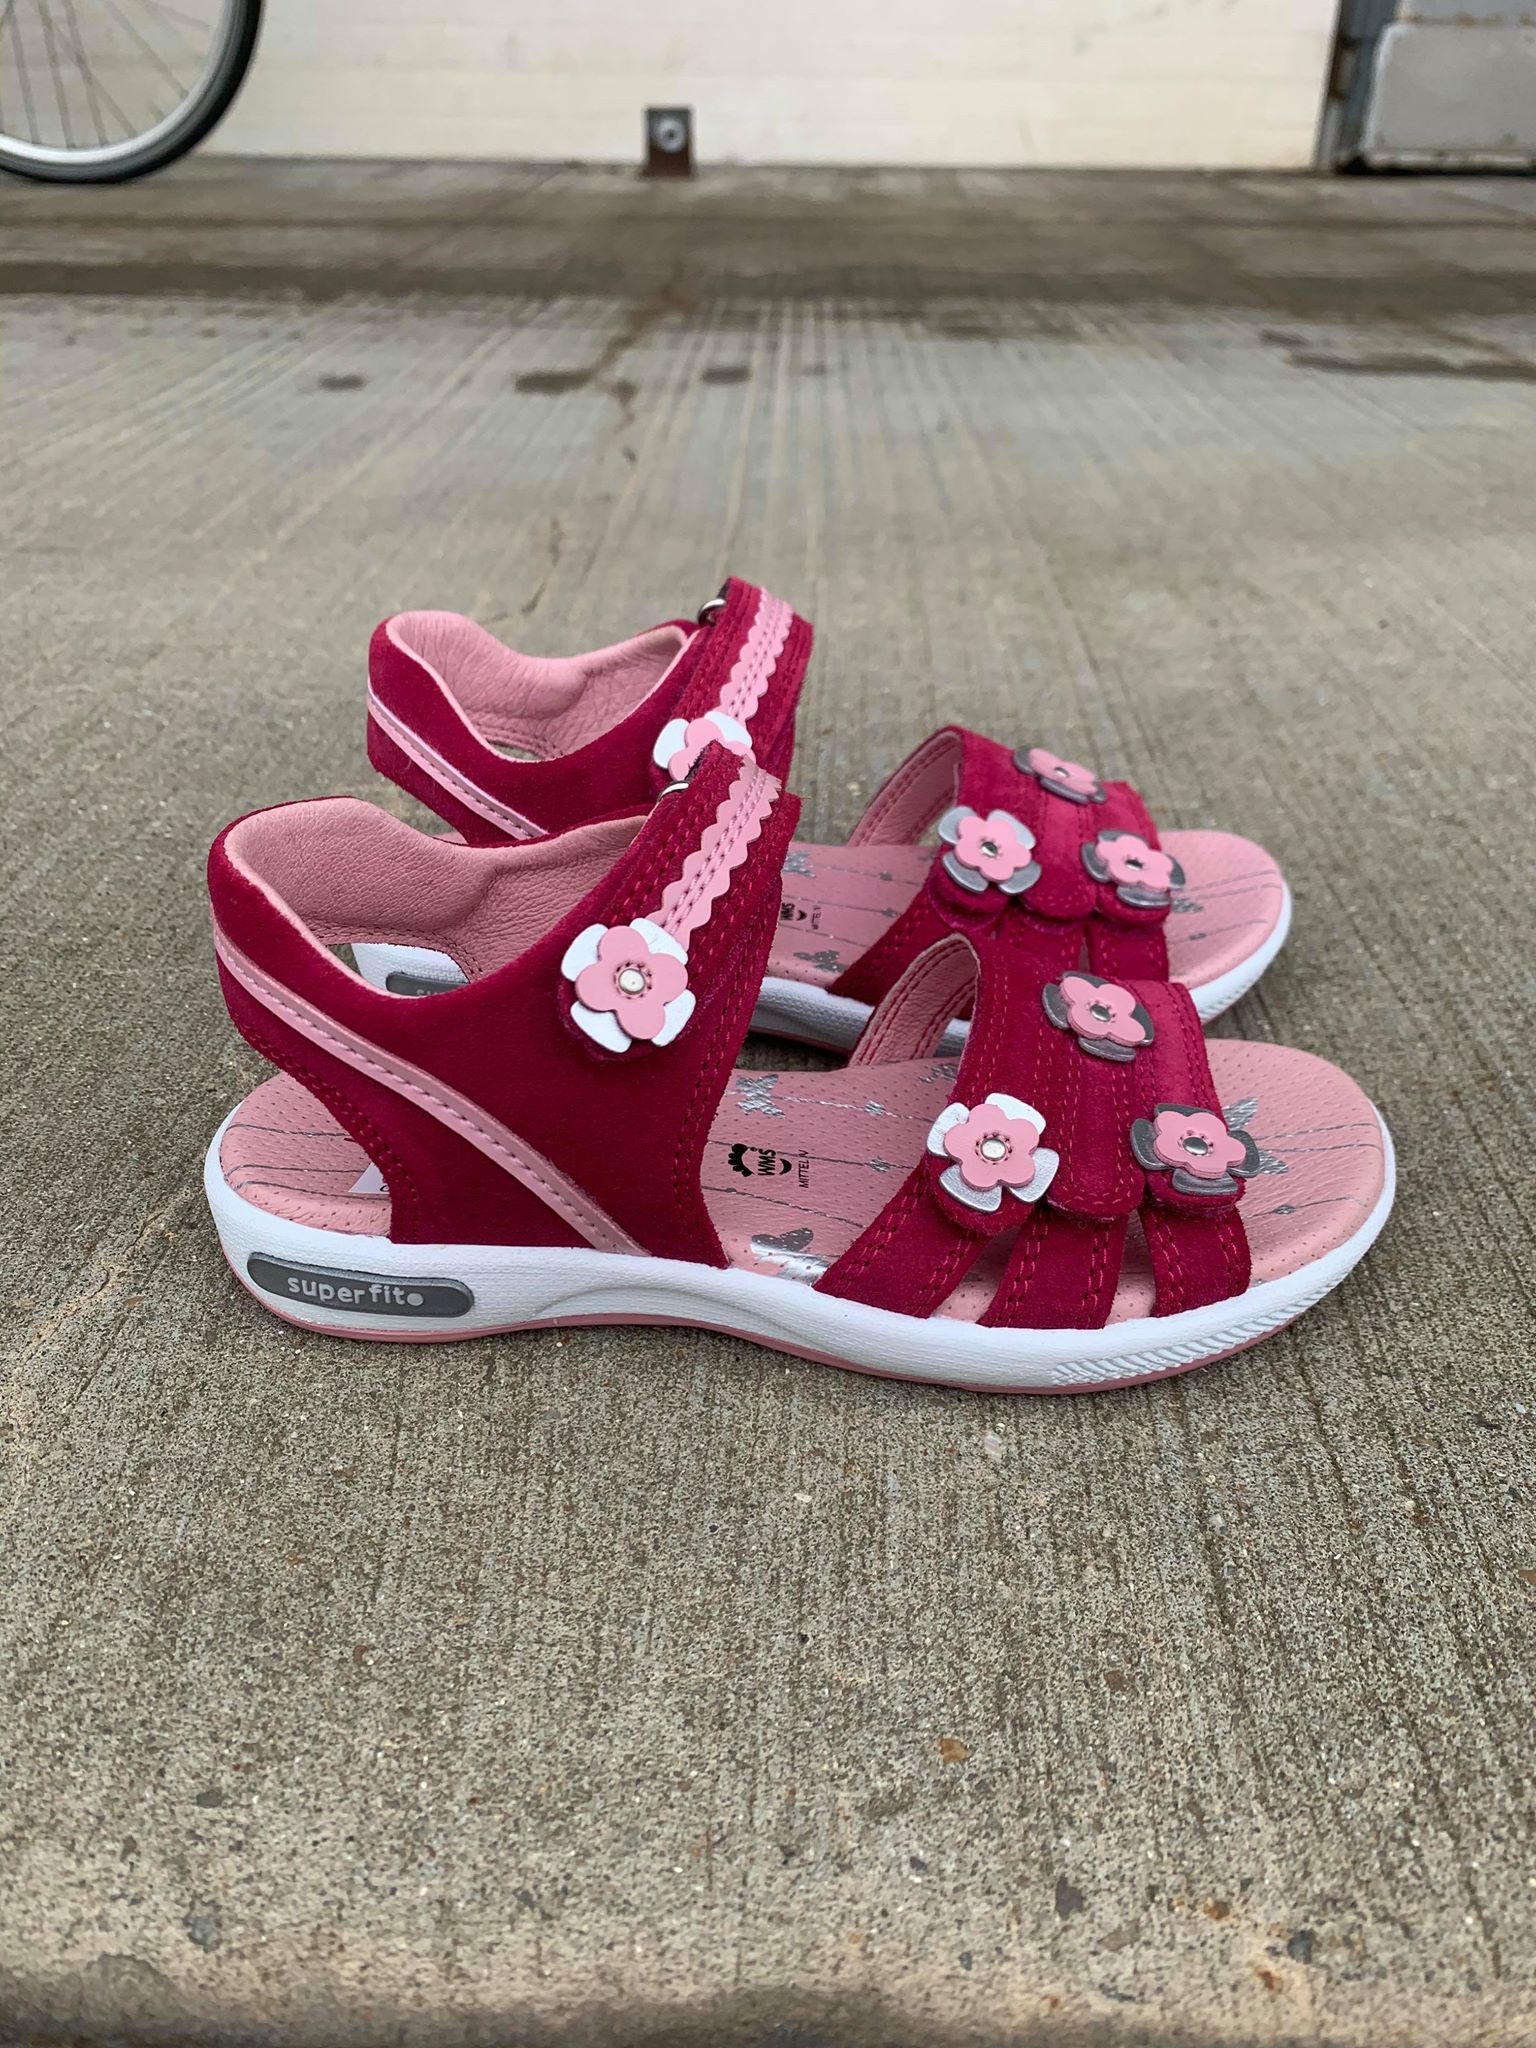 Superfit, Sandaler velcro - Pink, Børne sandaler med blomster, 4-09133-50 Rosa, - Butik i Aalborg og Nørresundby – Bertelsen Sko